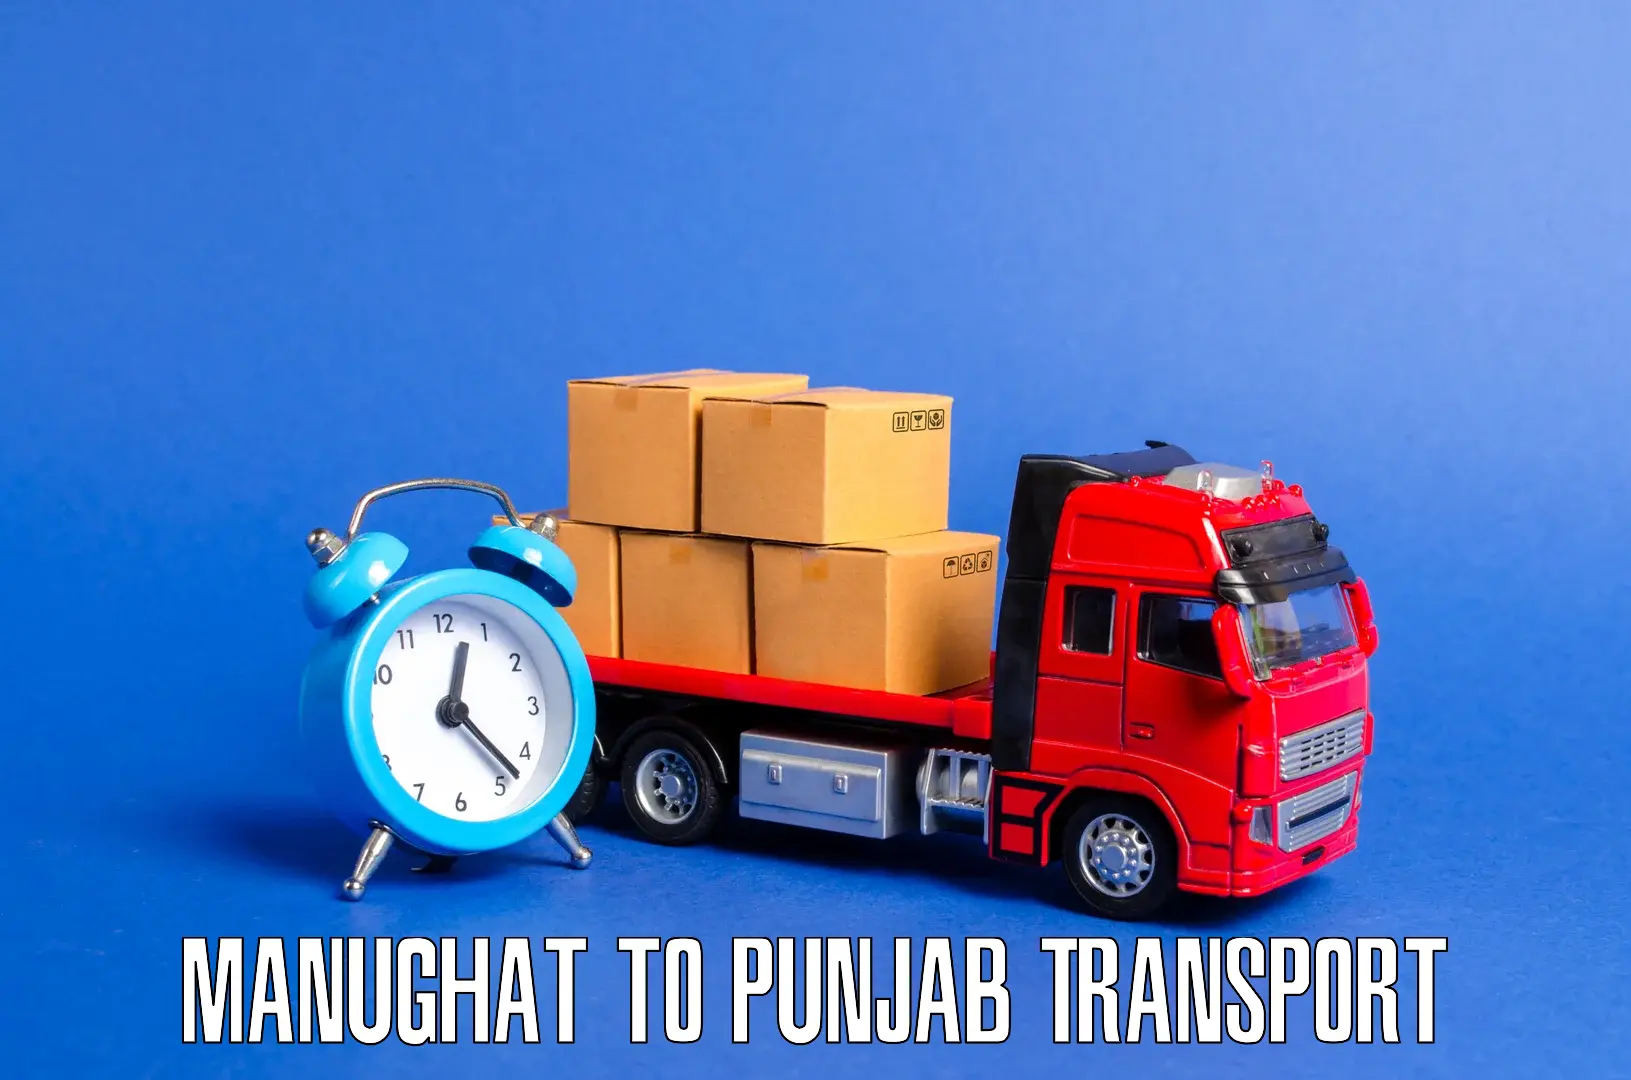 Road transport services Manughat to Jalandhar